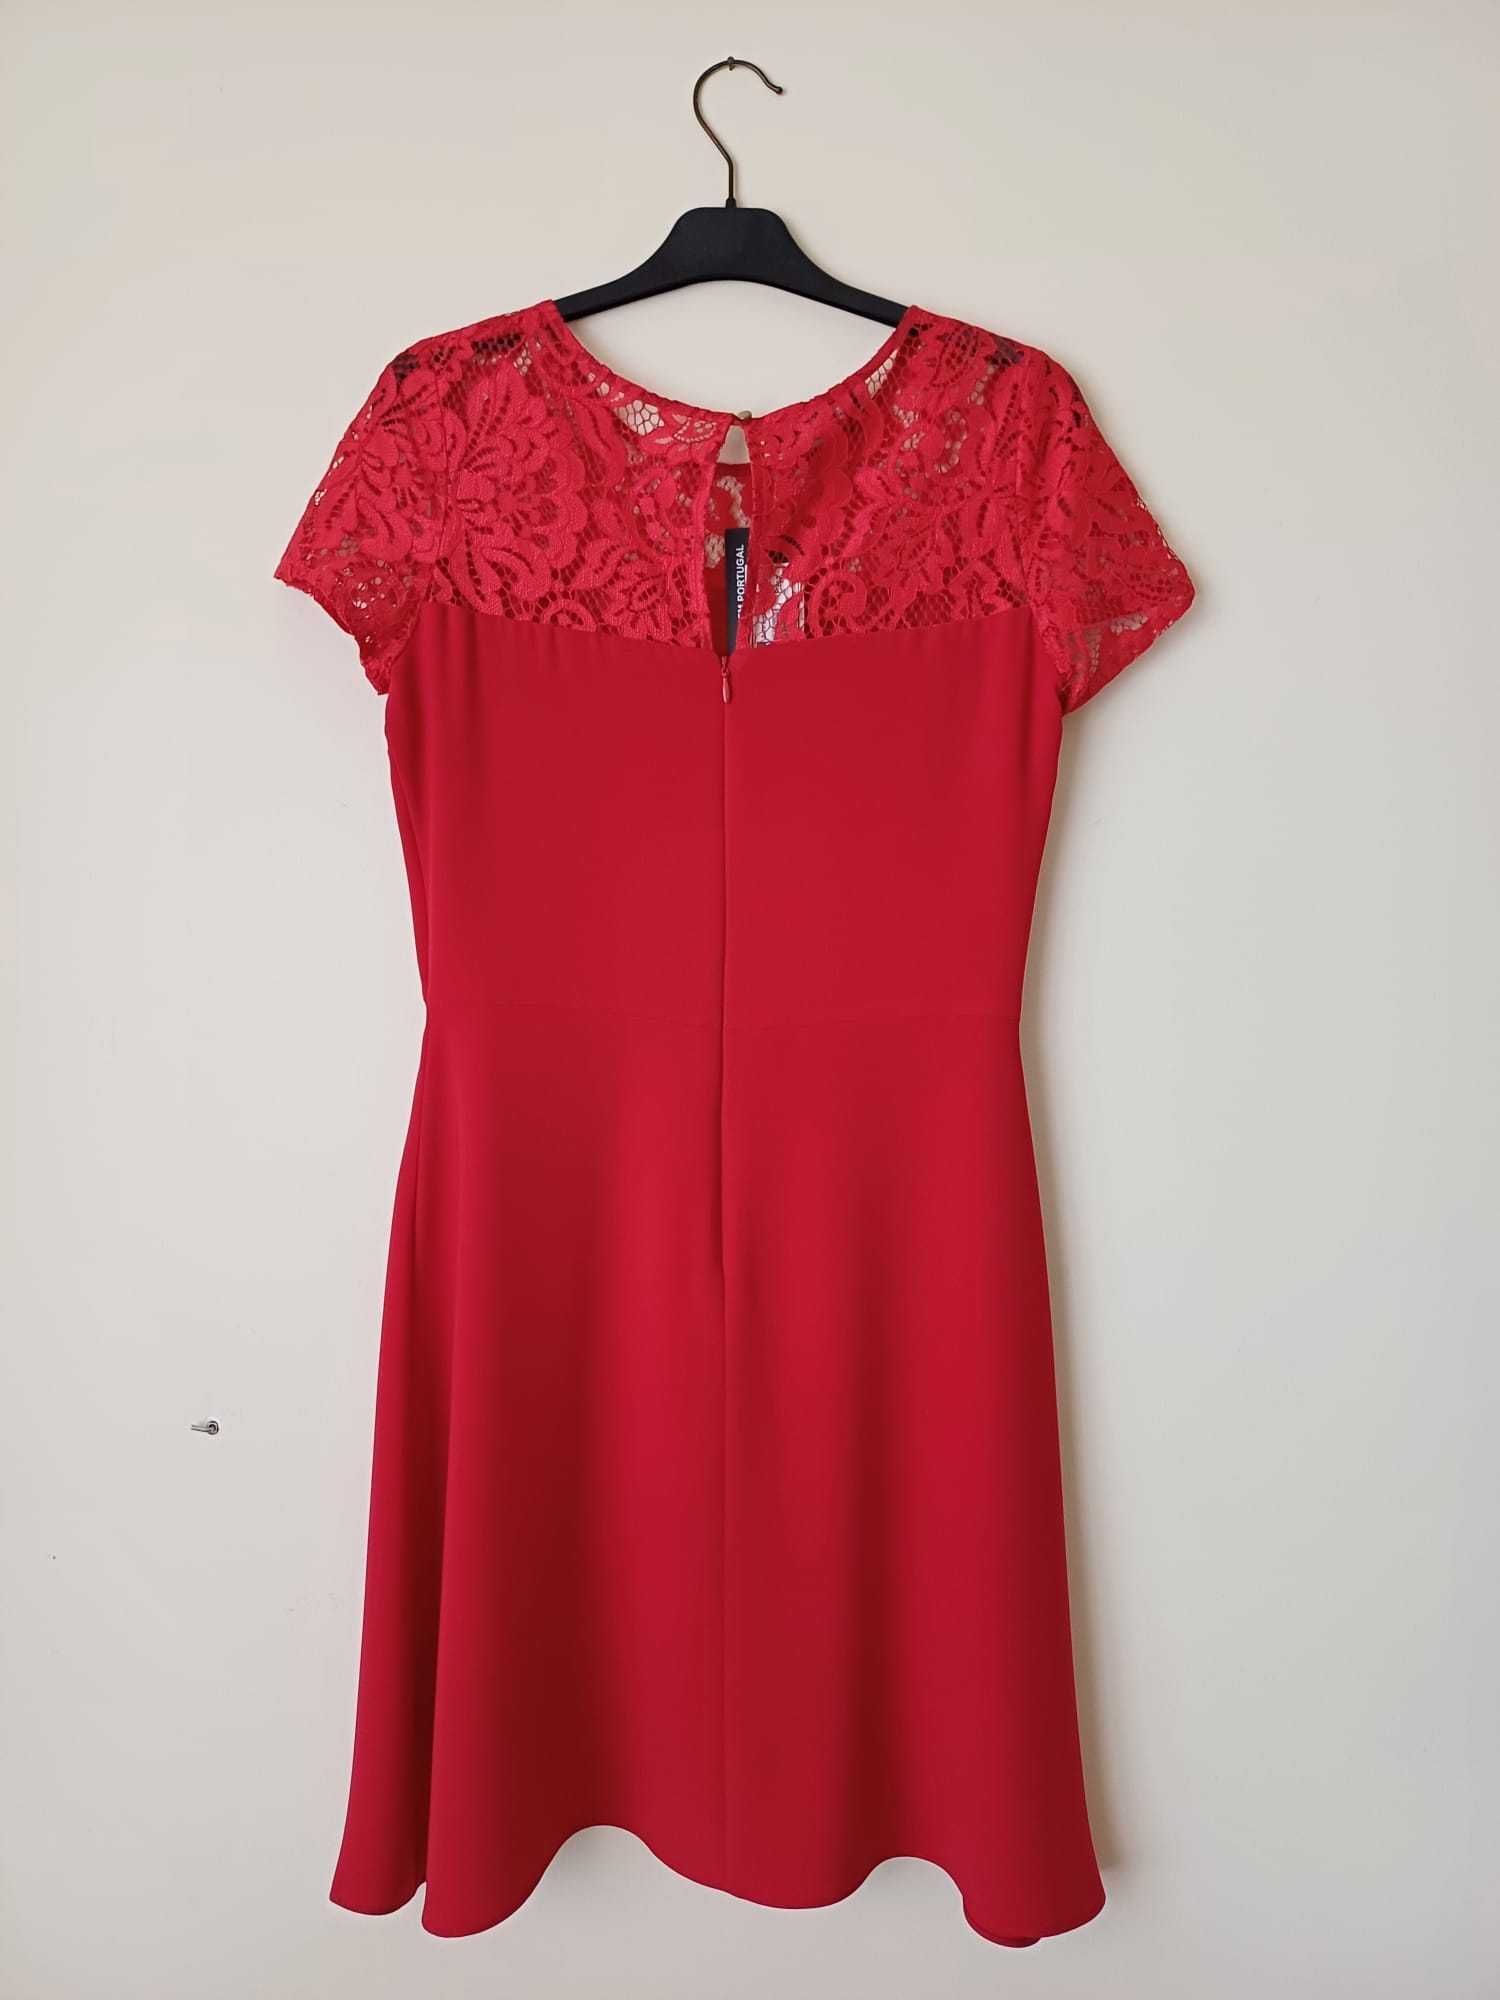 Vestido vermelho formal com renda novo com etiqueta - Novas Tendências